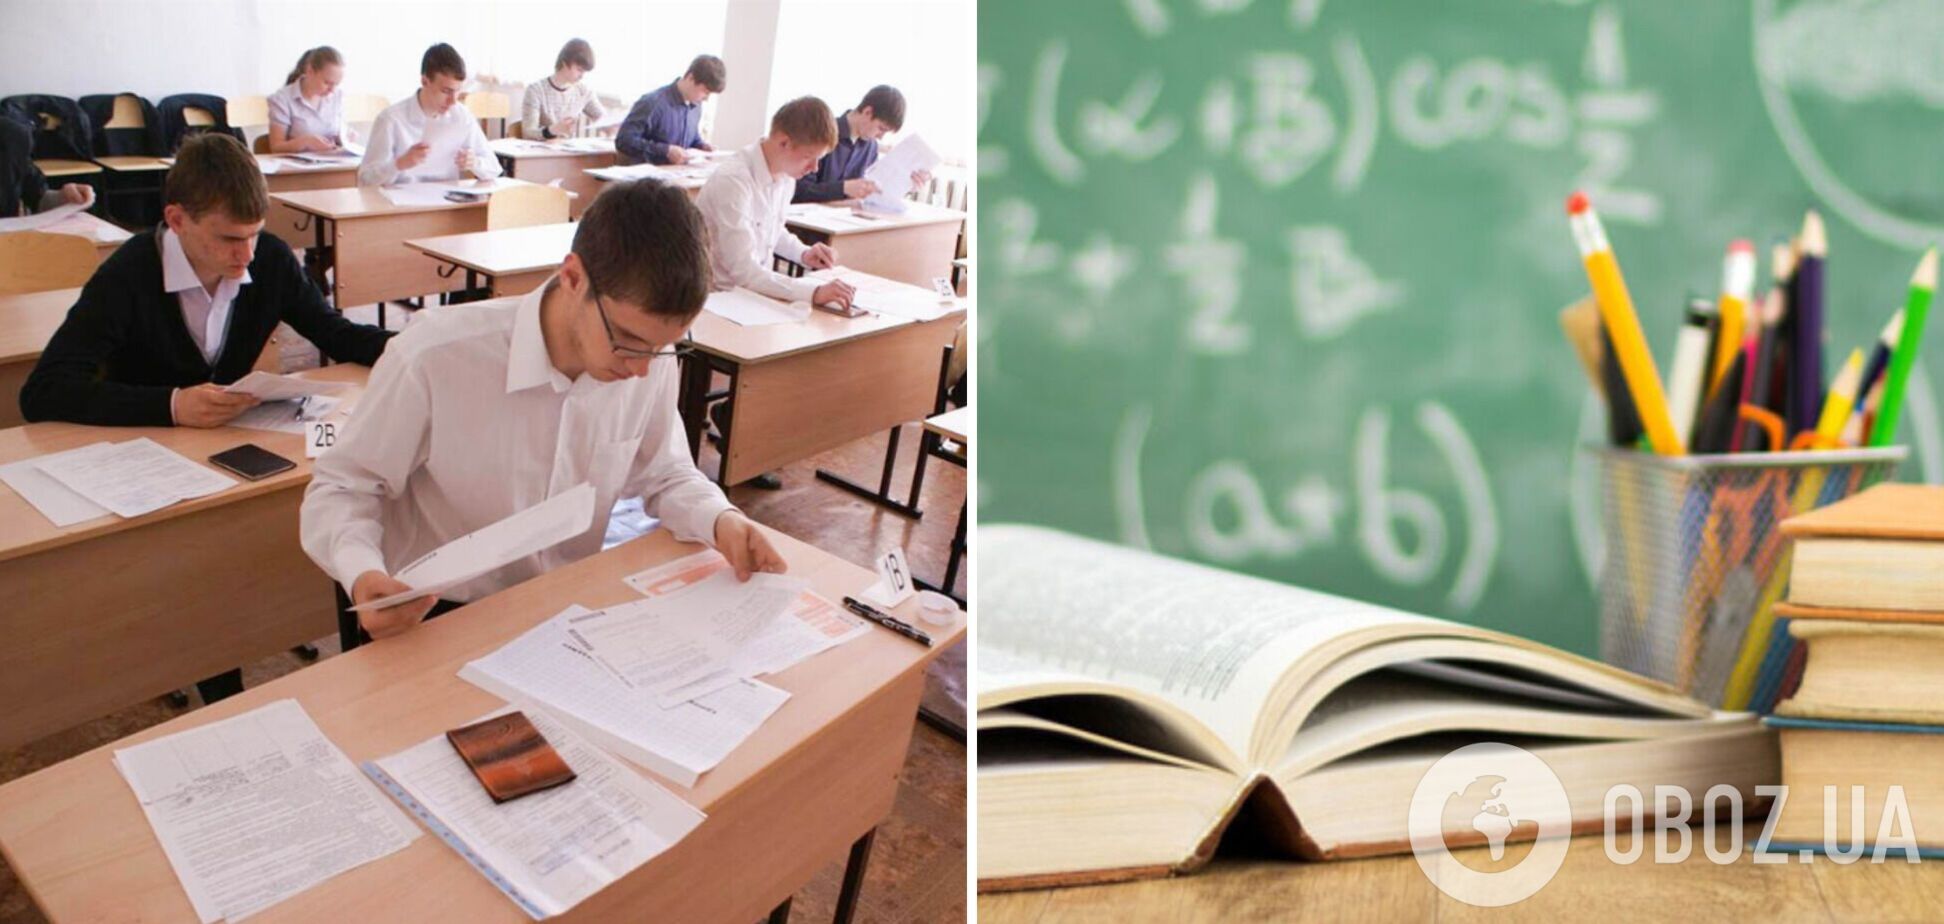 МОН отменило ГИА для учащихся 4-х и 9-х классов, – министр Шкарлетт